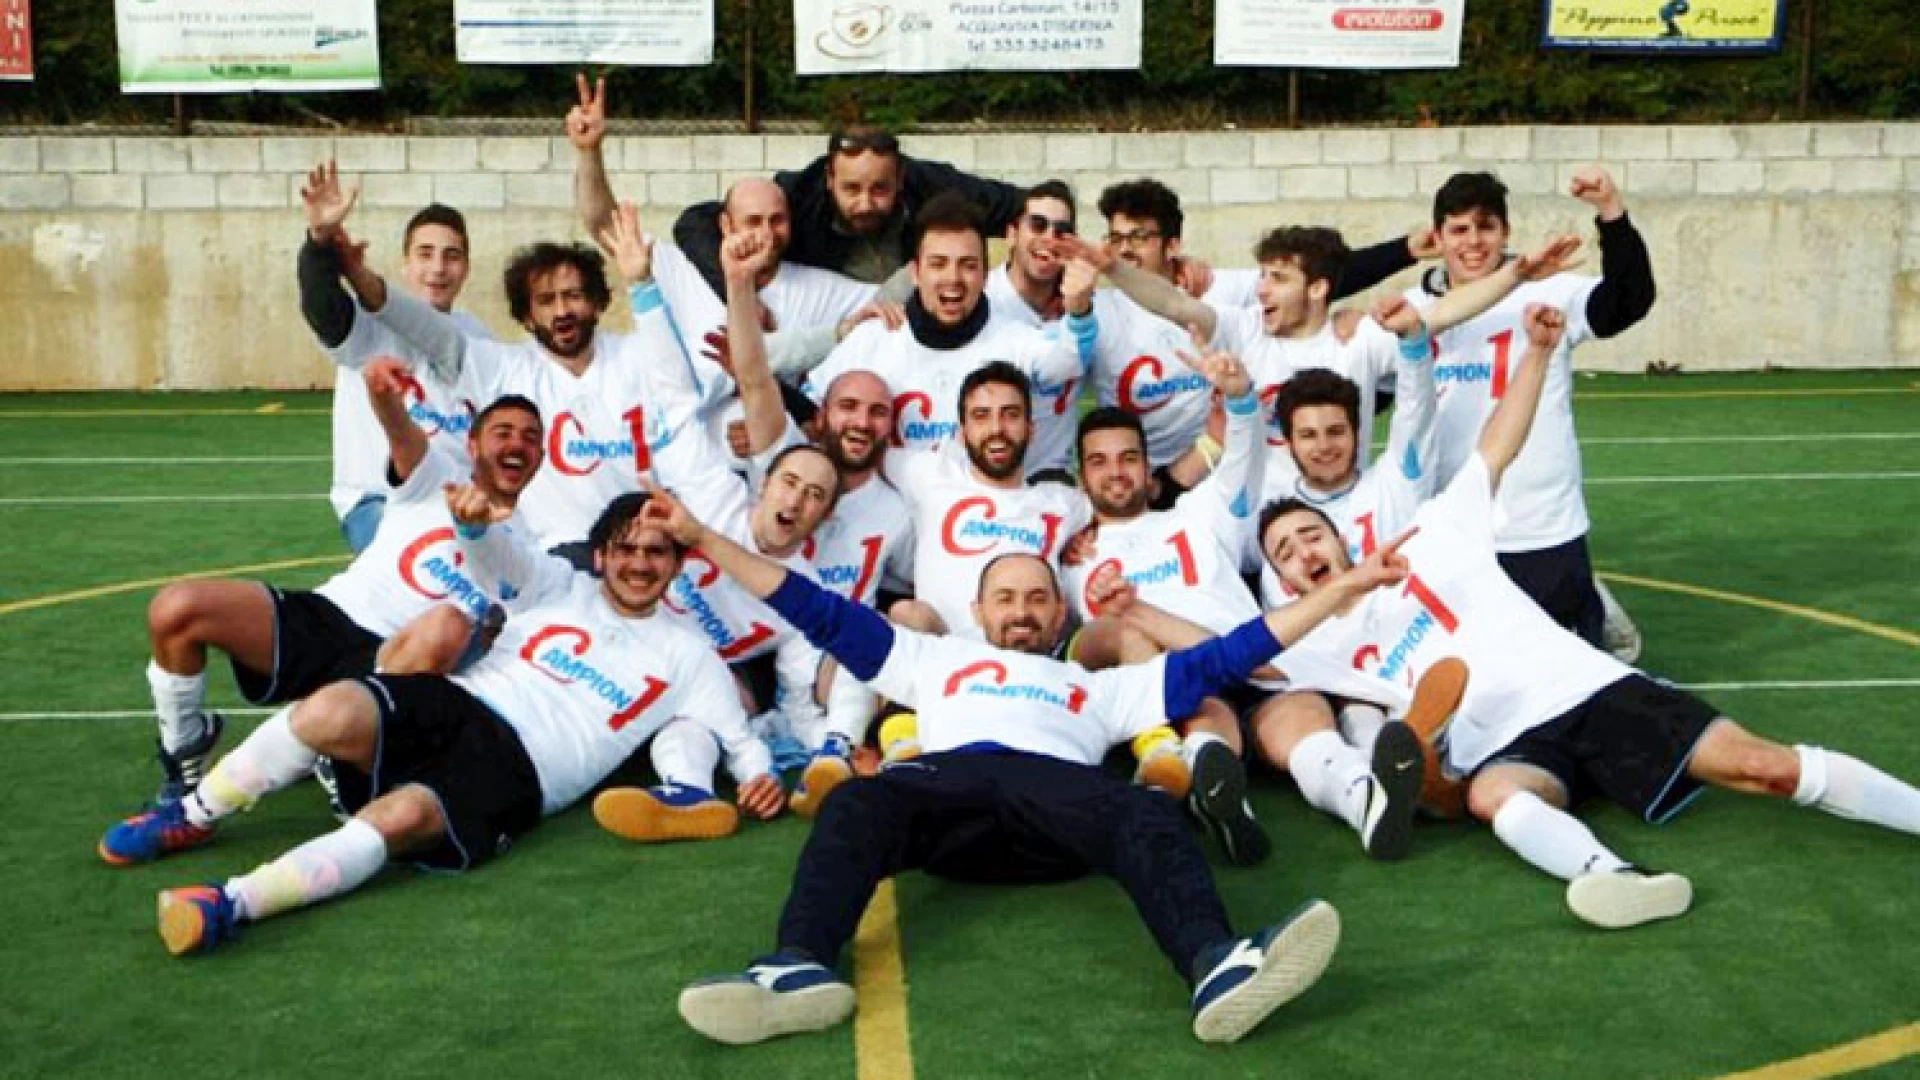 Striscia La Notizia e Militello incoronano la Futsal Acquaviva. I festeggiamenti post vittoria del campionato finiti su Canale 5.